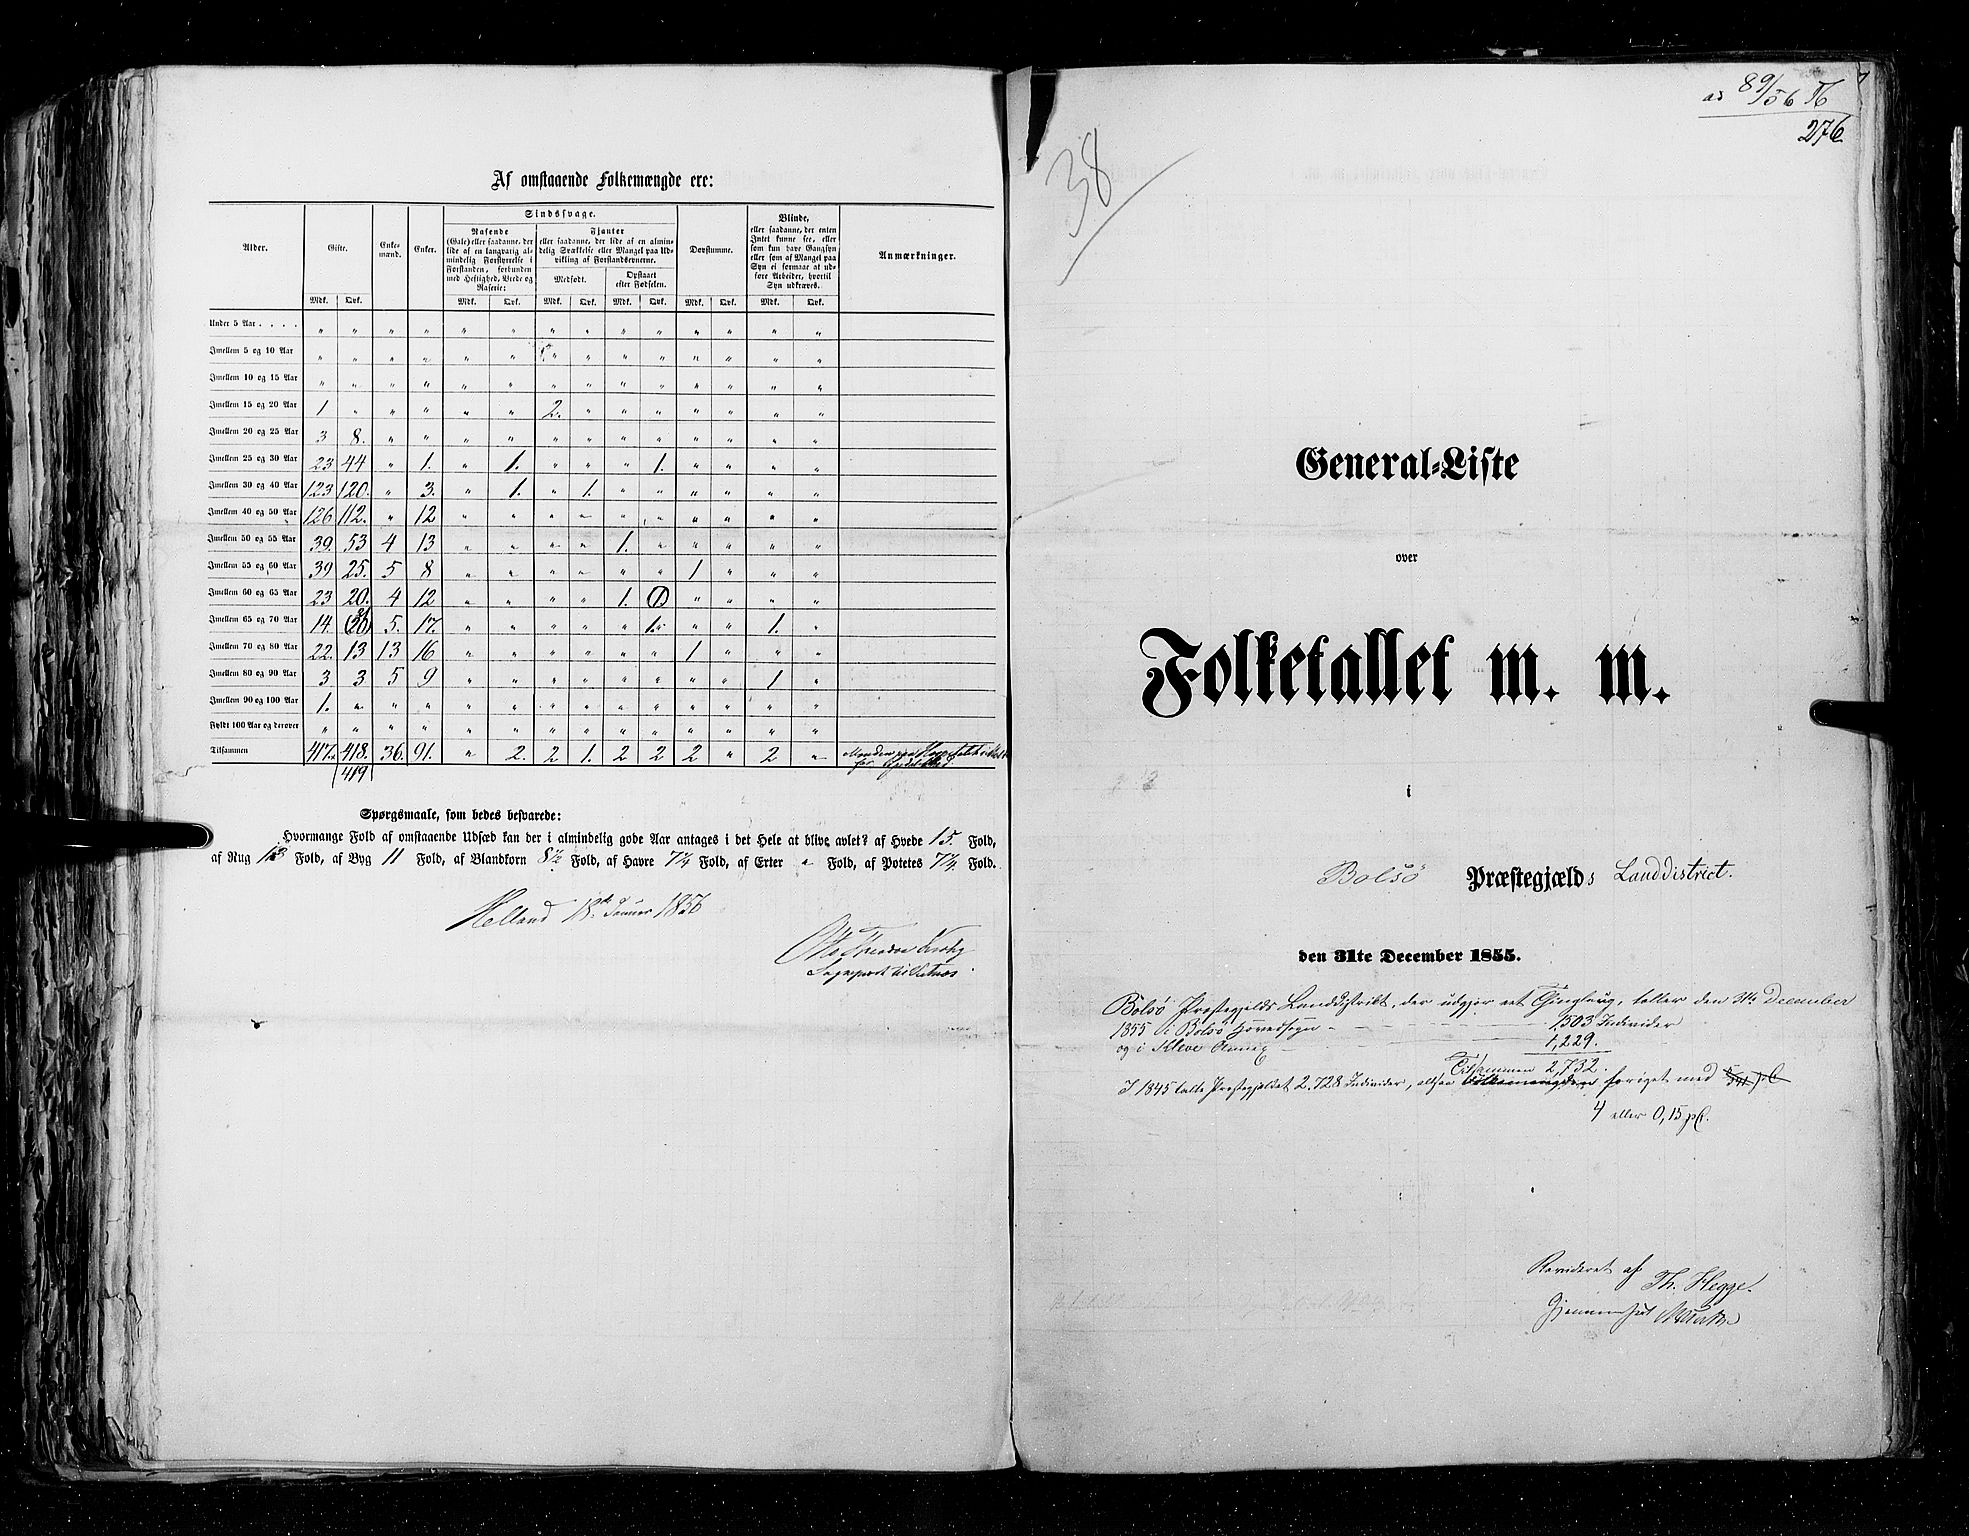 RA, Folketellingen 1855, bind 5: Nordre Bergenhus amt, Romsdal amt og Søndre Trondhjem amt, 1855, s. 276